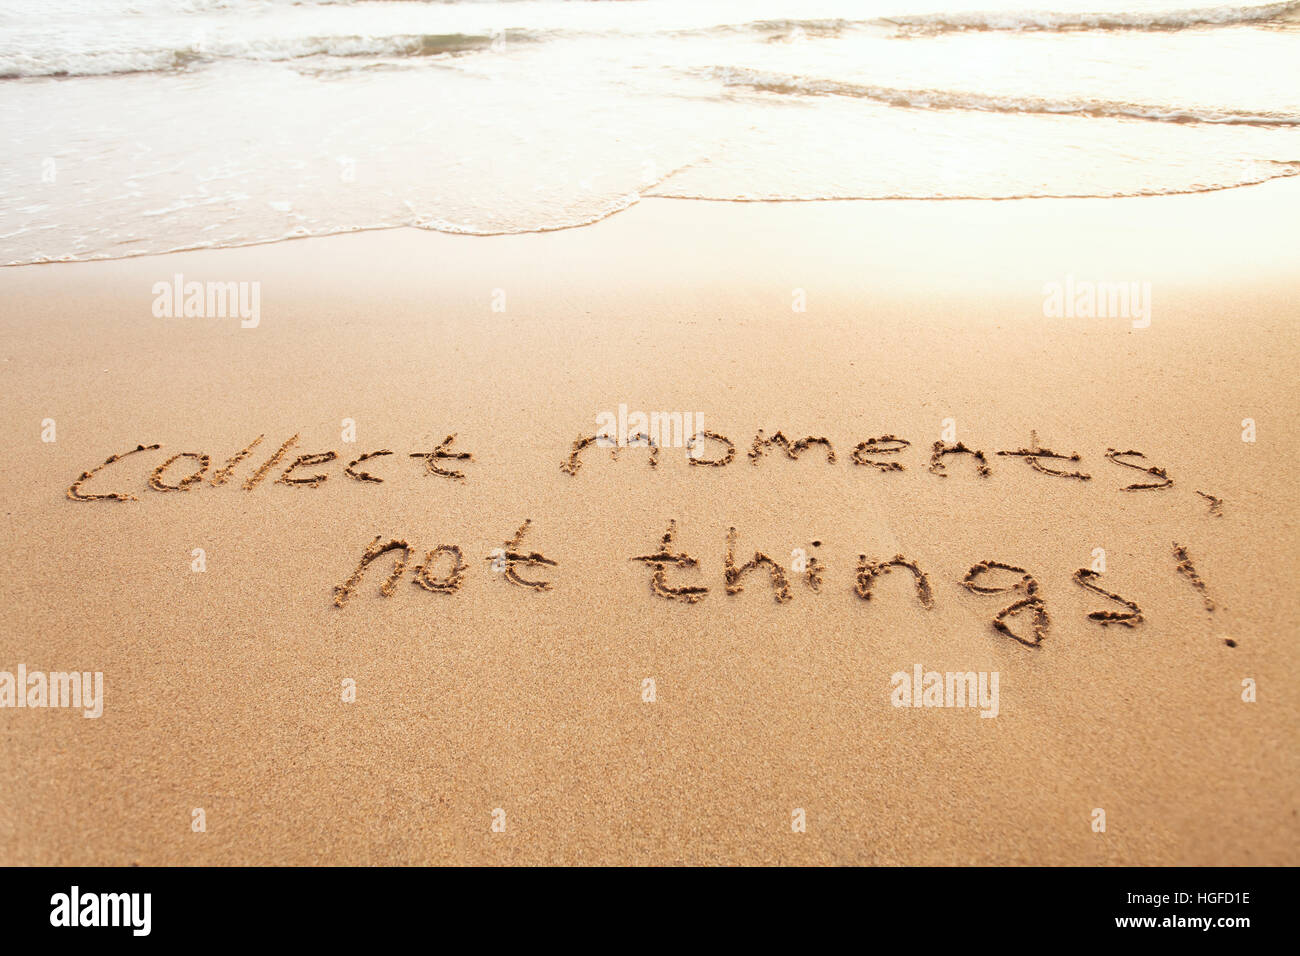 Recoger momentos, no las cosas - Concepto de felicidad, feliz vida cita inspiradora, disfrutar de la vida, el texto sobre arena. Foto de stock